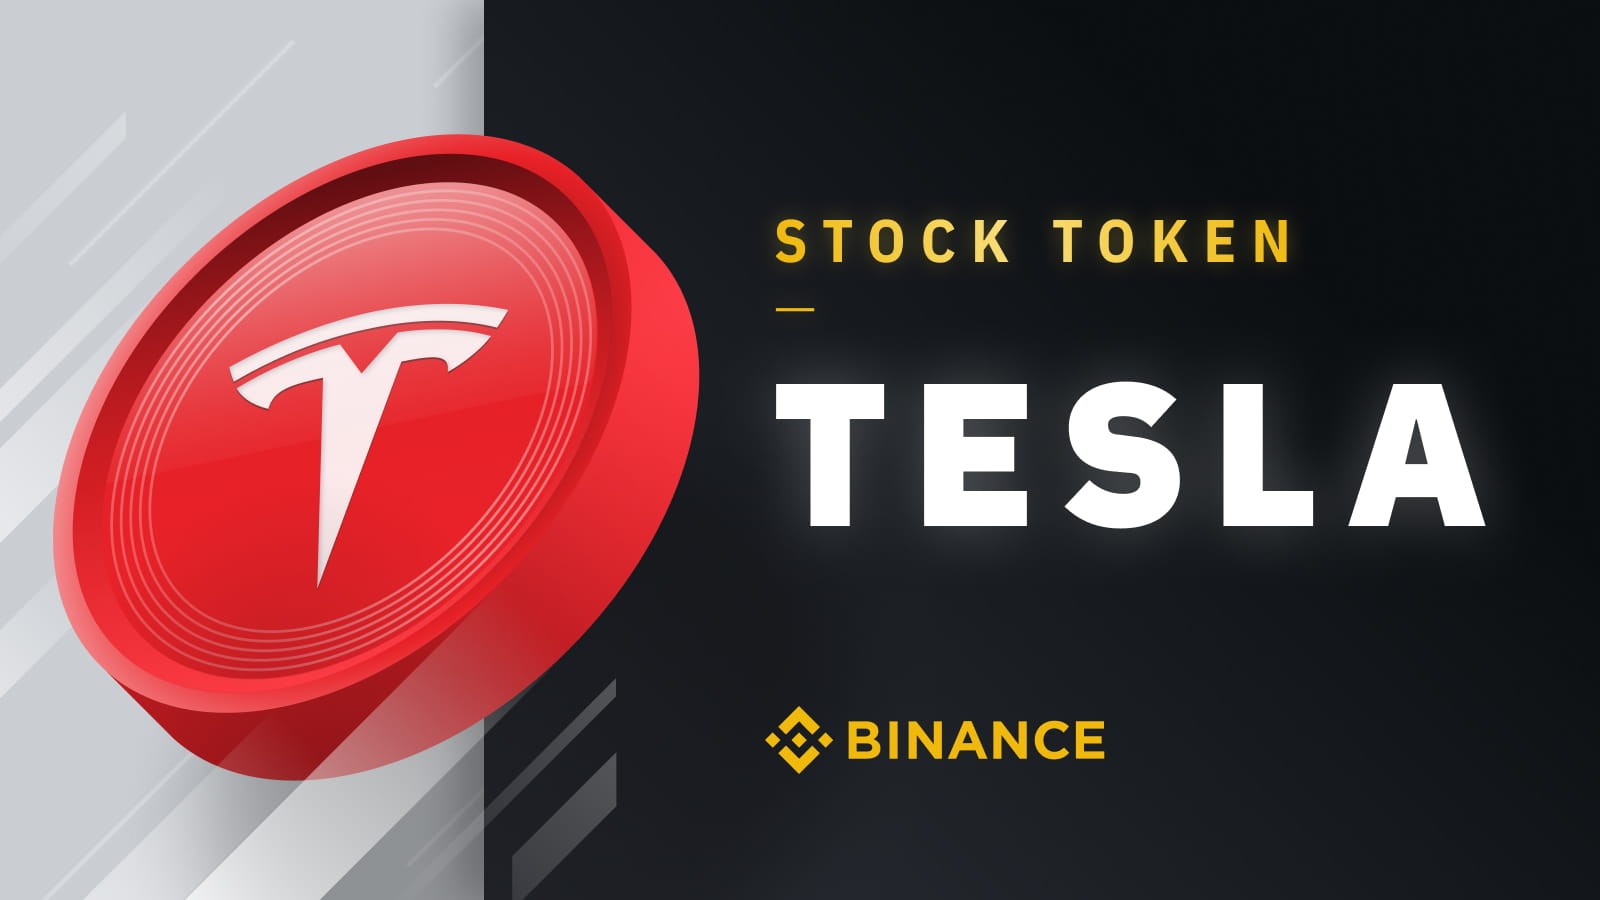 Binance oferă jetonul Tesla, ar putea urma Coinbase (COIN)? | Platon Blockchain